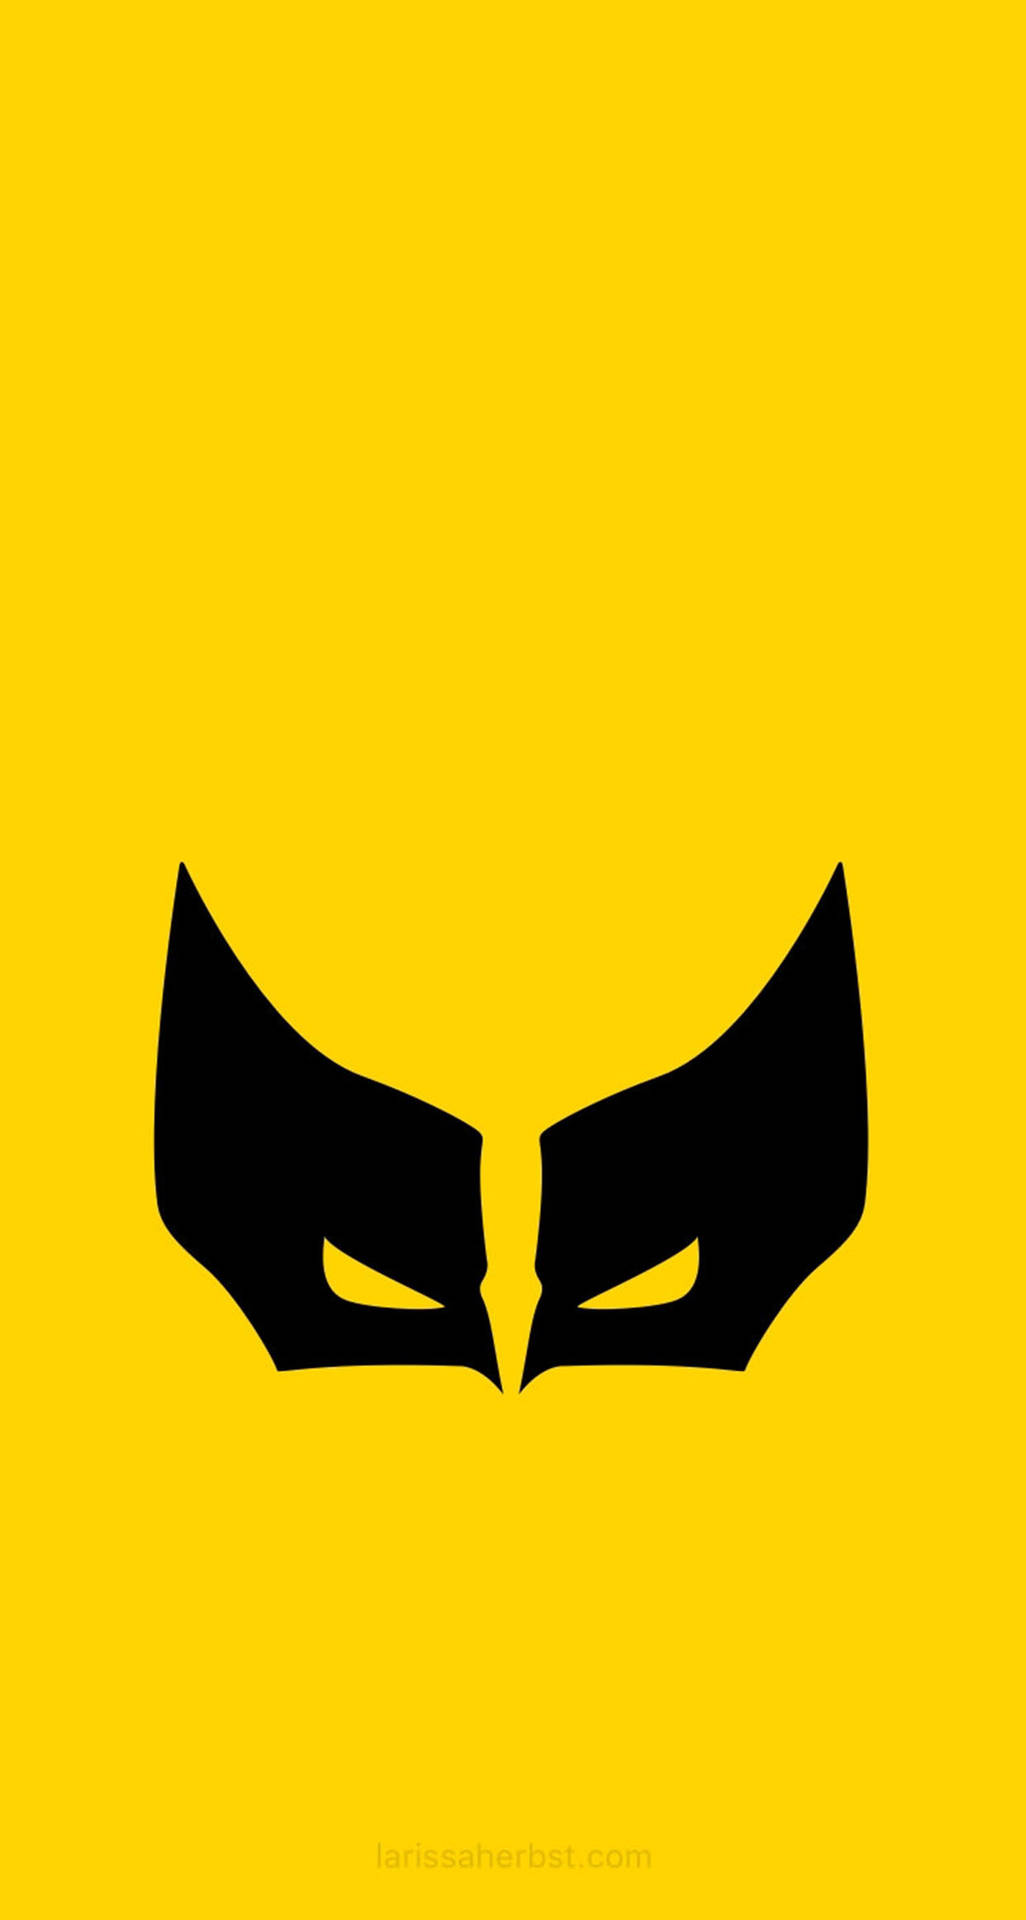 Wolverine Minimalist Android